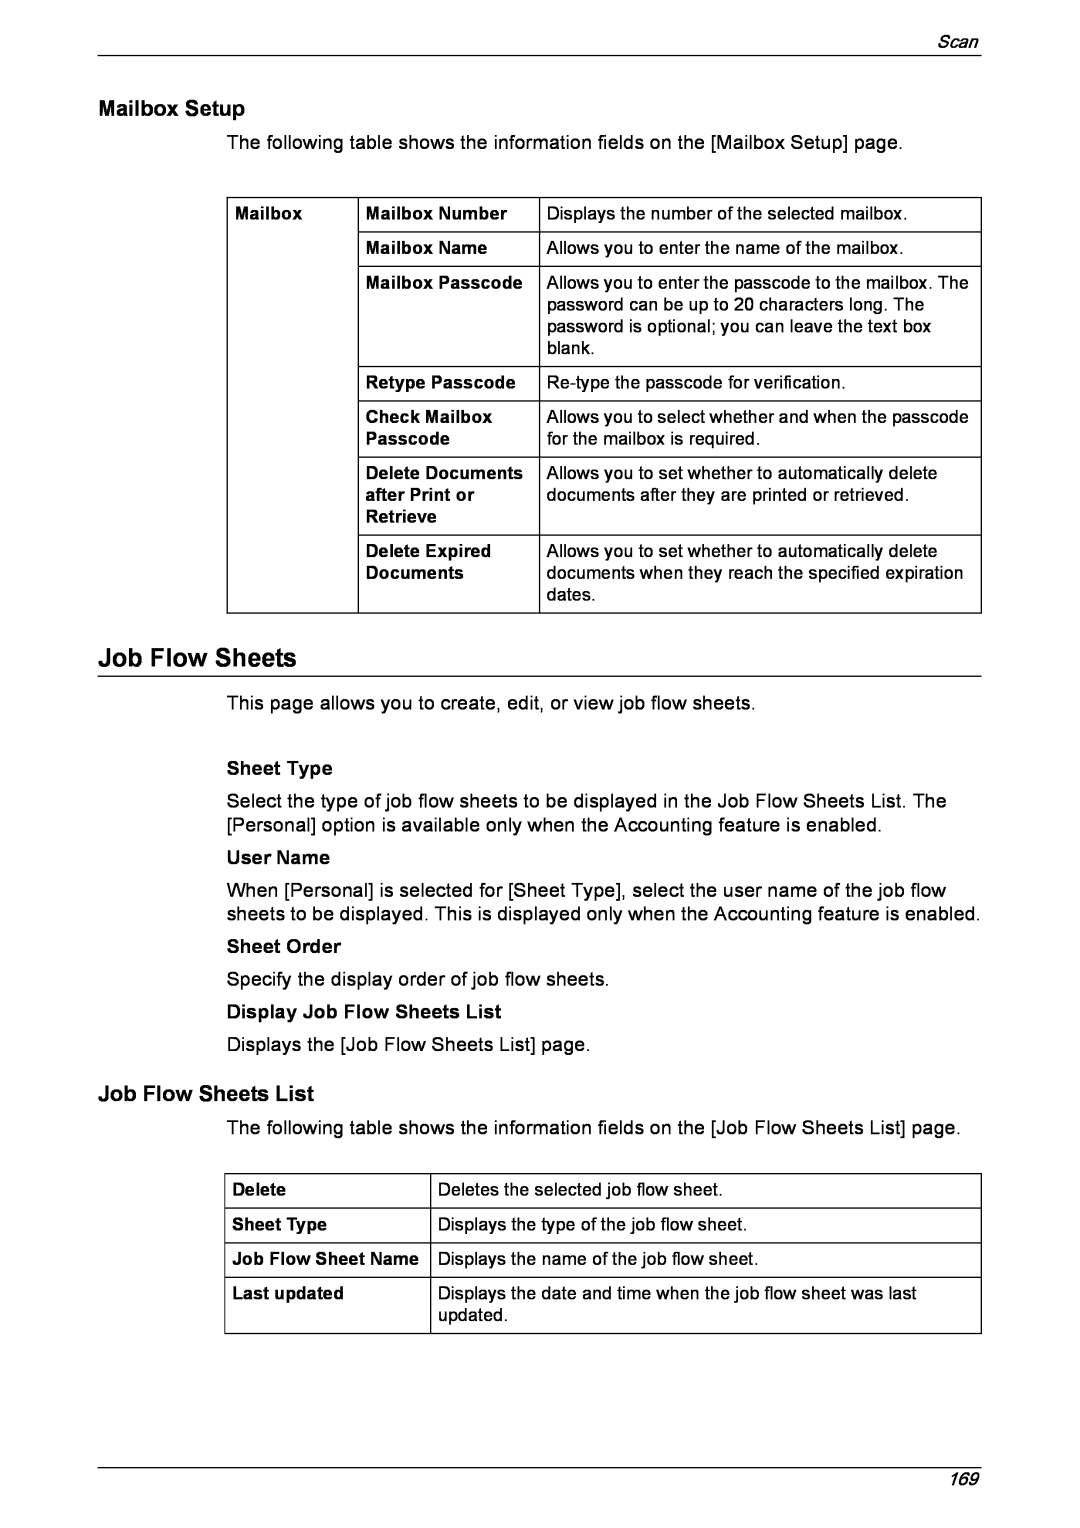 Xerox 5222 manual Sheet Type, User Name, Sheet Order, Display Job Flow Sheets List 